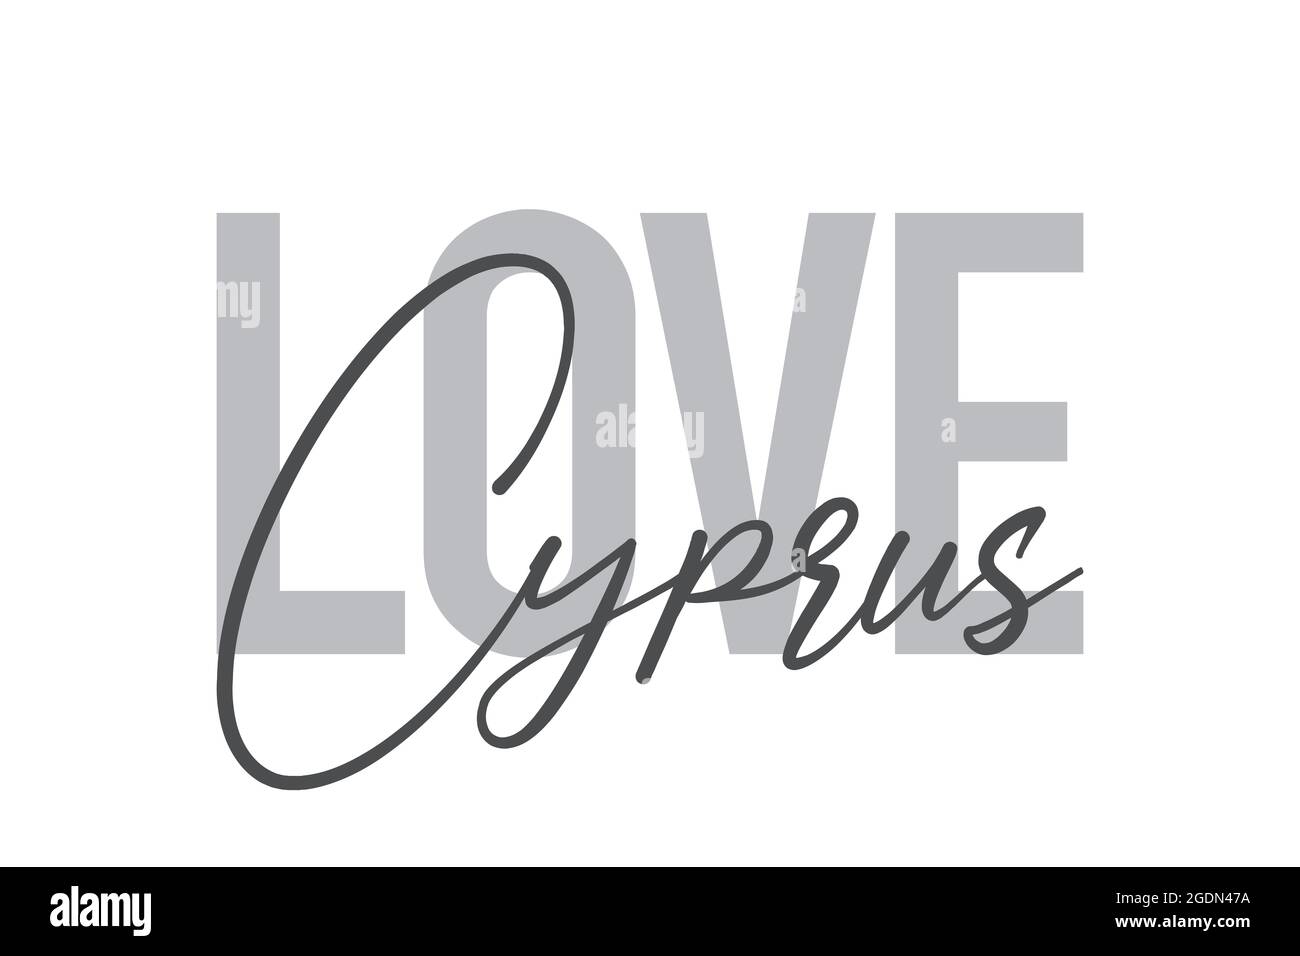 Design tipografico moderno, semplice e minimale di un detto 'Love Cyprus' in tonalità di grigio. Grafica vettoriale cool, urbana, trendy e giocosa con h Foto Stock